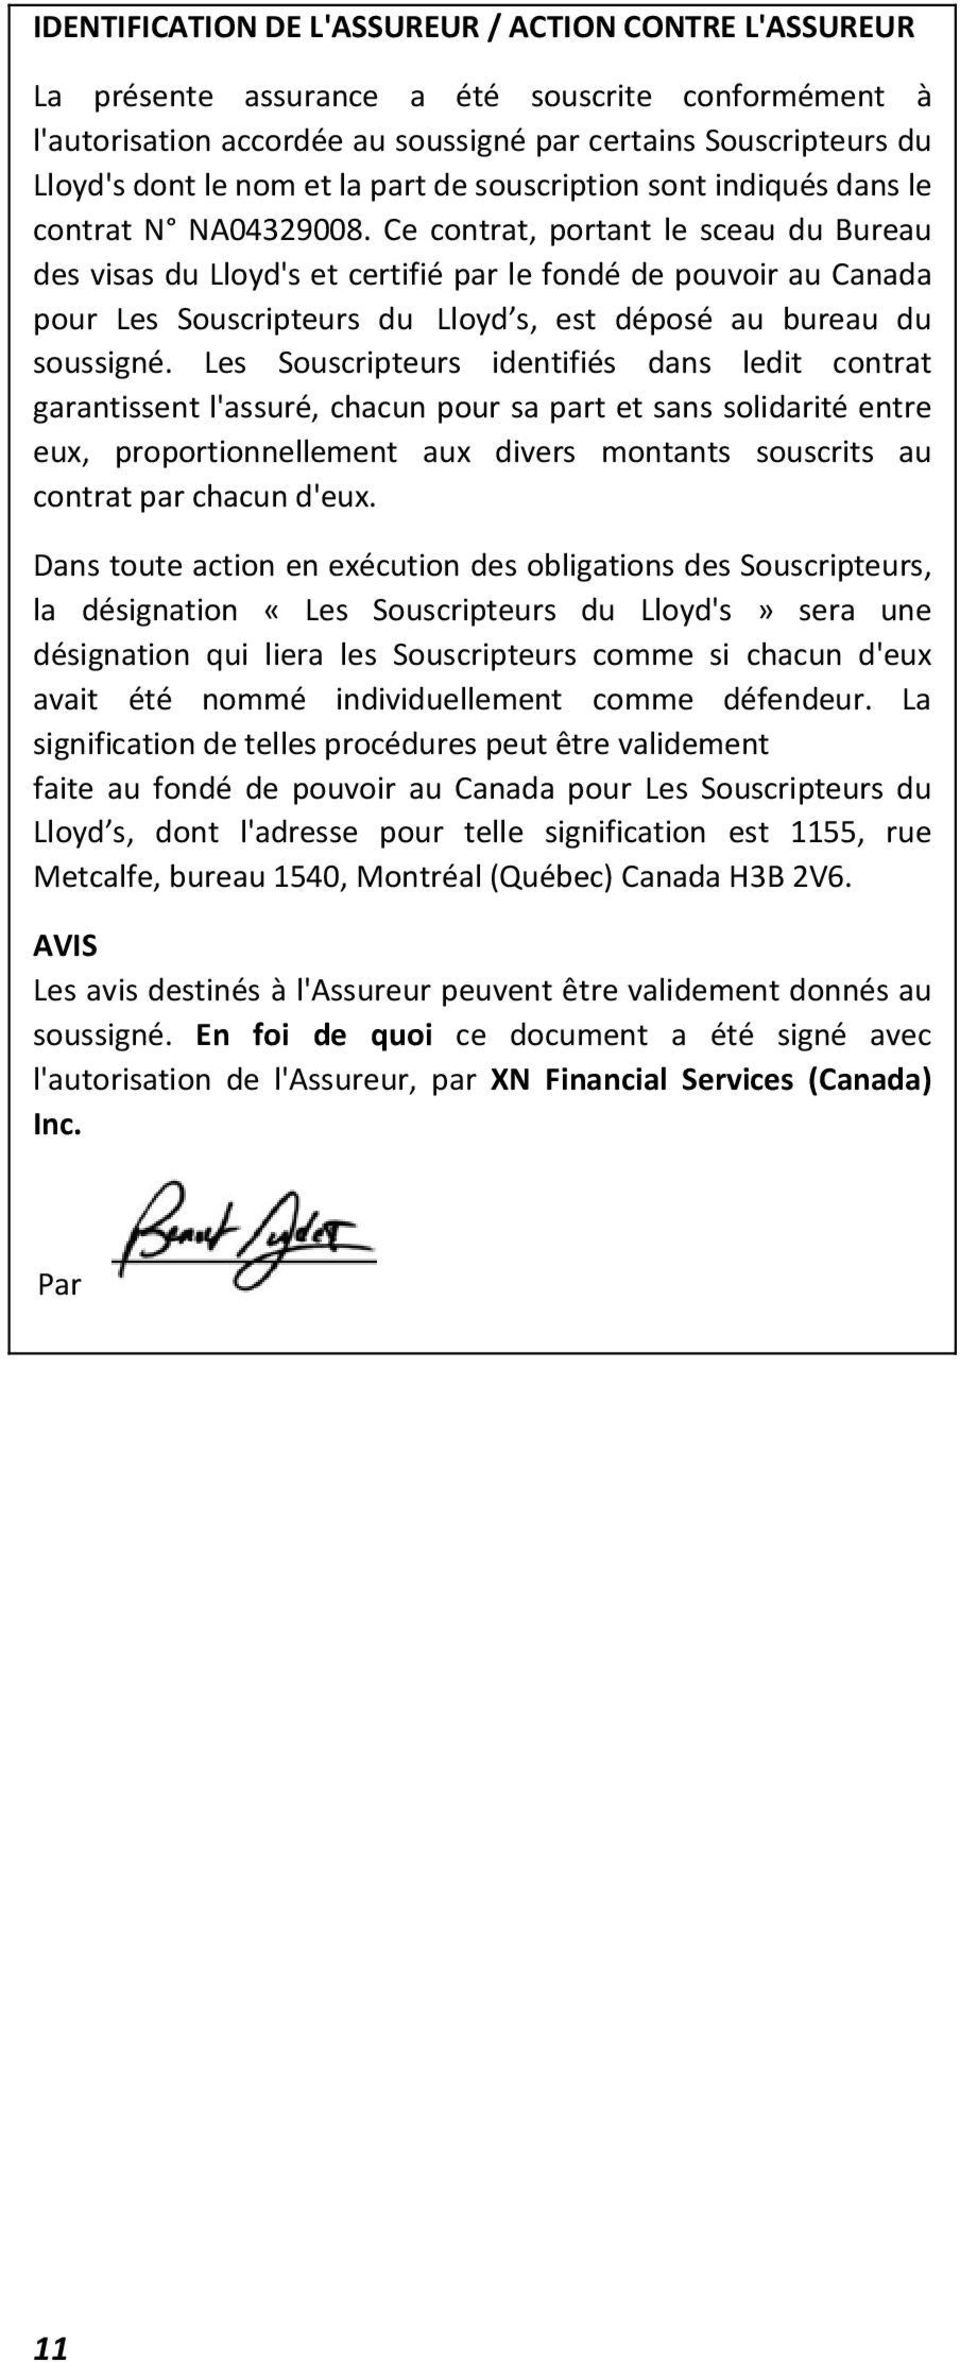 Ce contrat, portant le sceau du Bureau des visas du Lloyd's et certifié par le fondé de pouvoir au Canada pour Les Souscripteurs du Lloyd s, est déposé au bureau du soussigné.